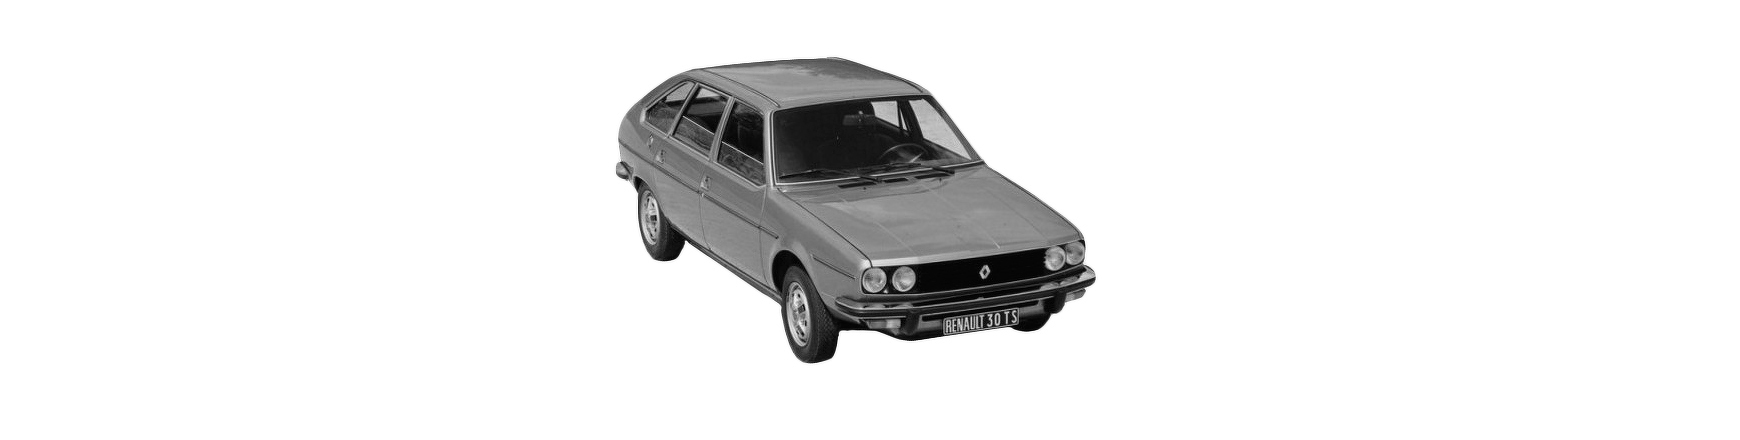 Piezas y Recambios de Renault R 30 (127) de 1975 a 1986 | Veramauto.es